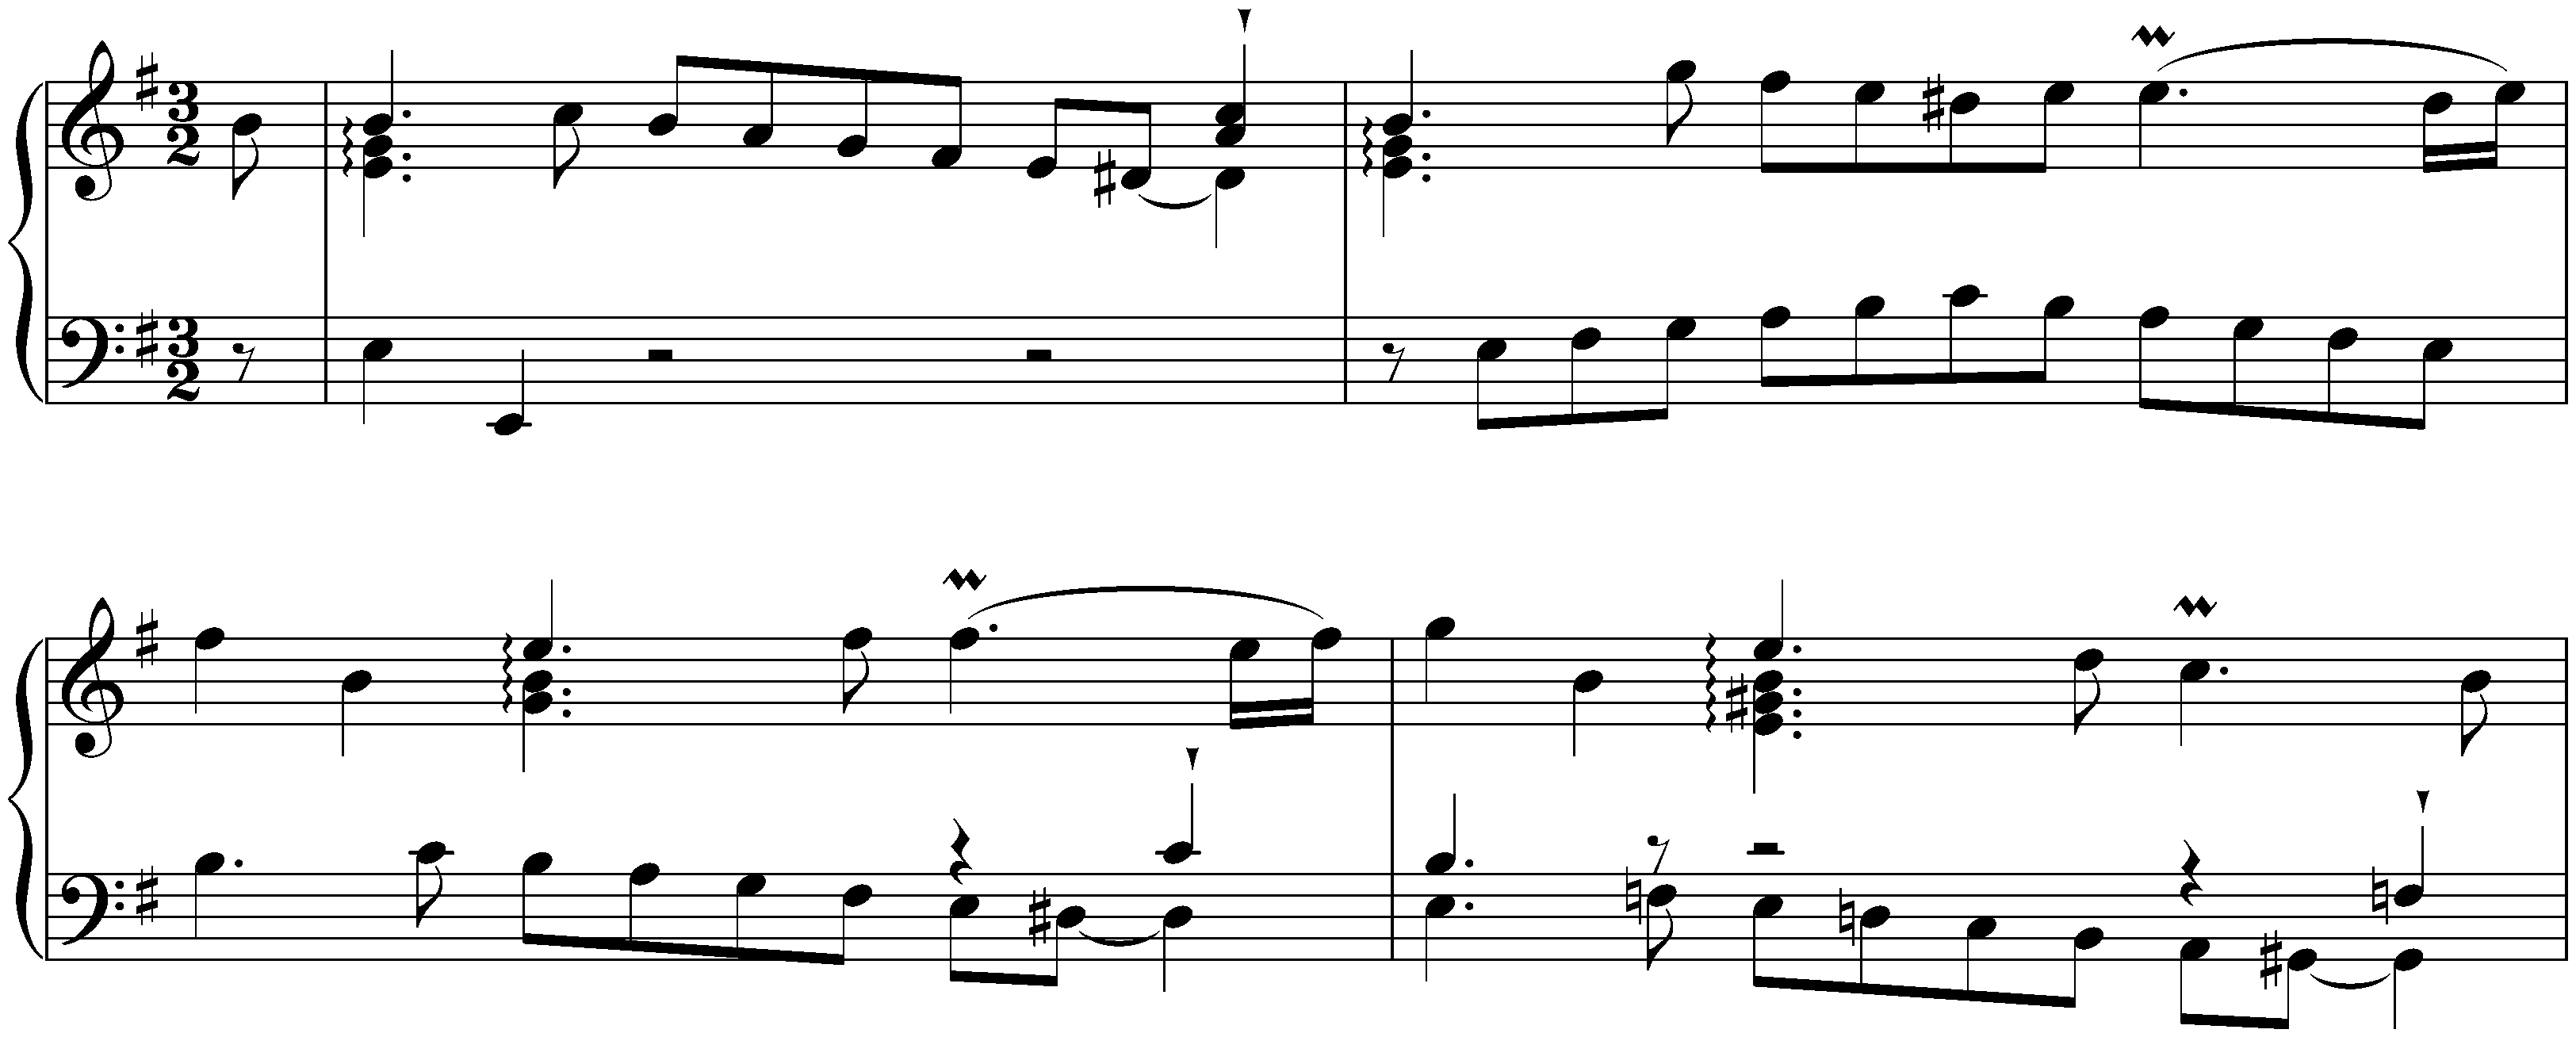 English Suite no. 5 in E minor, BWV 810; 3. Courante